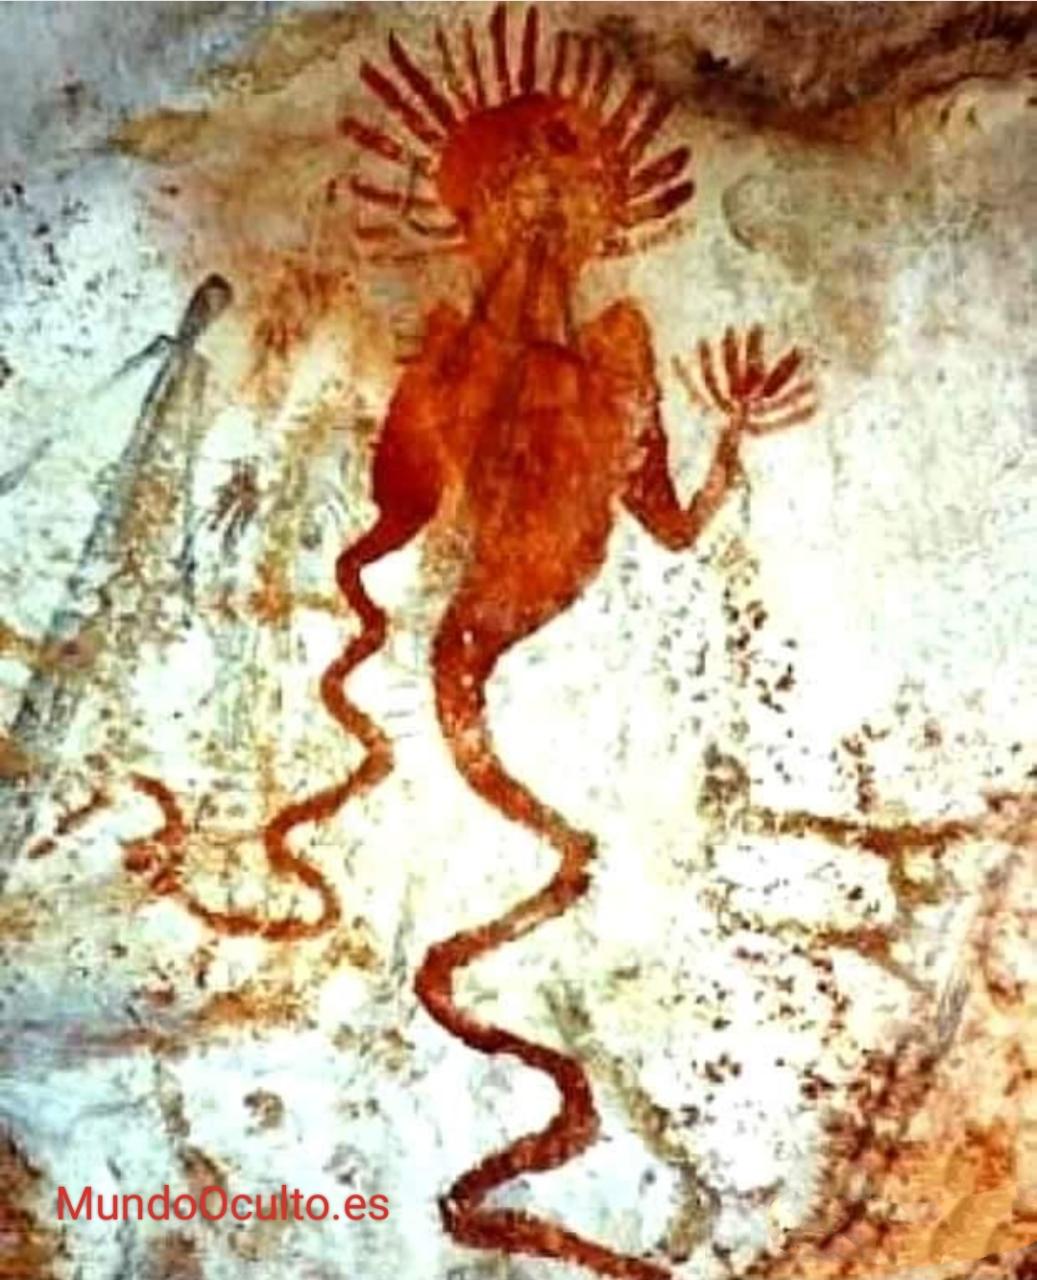 Una imagen dibujada hace 36.000 años en la cueva española de Altamira